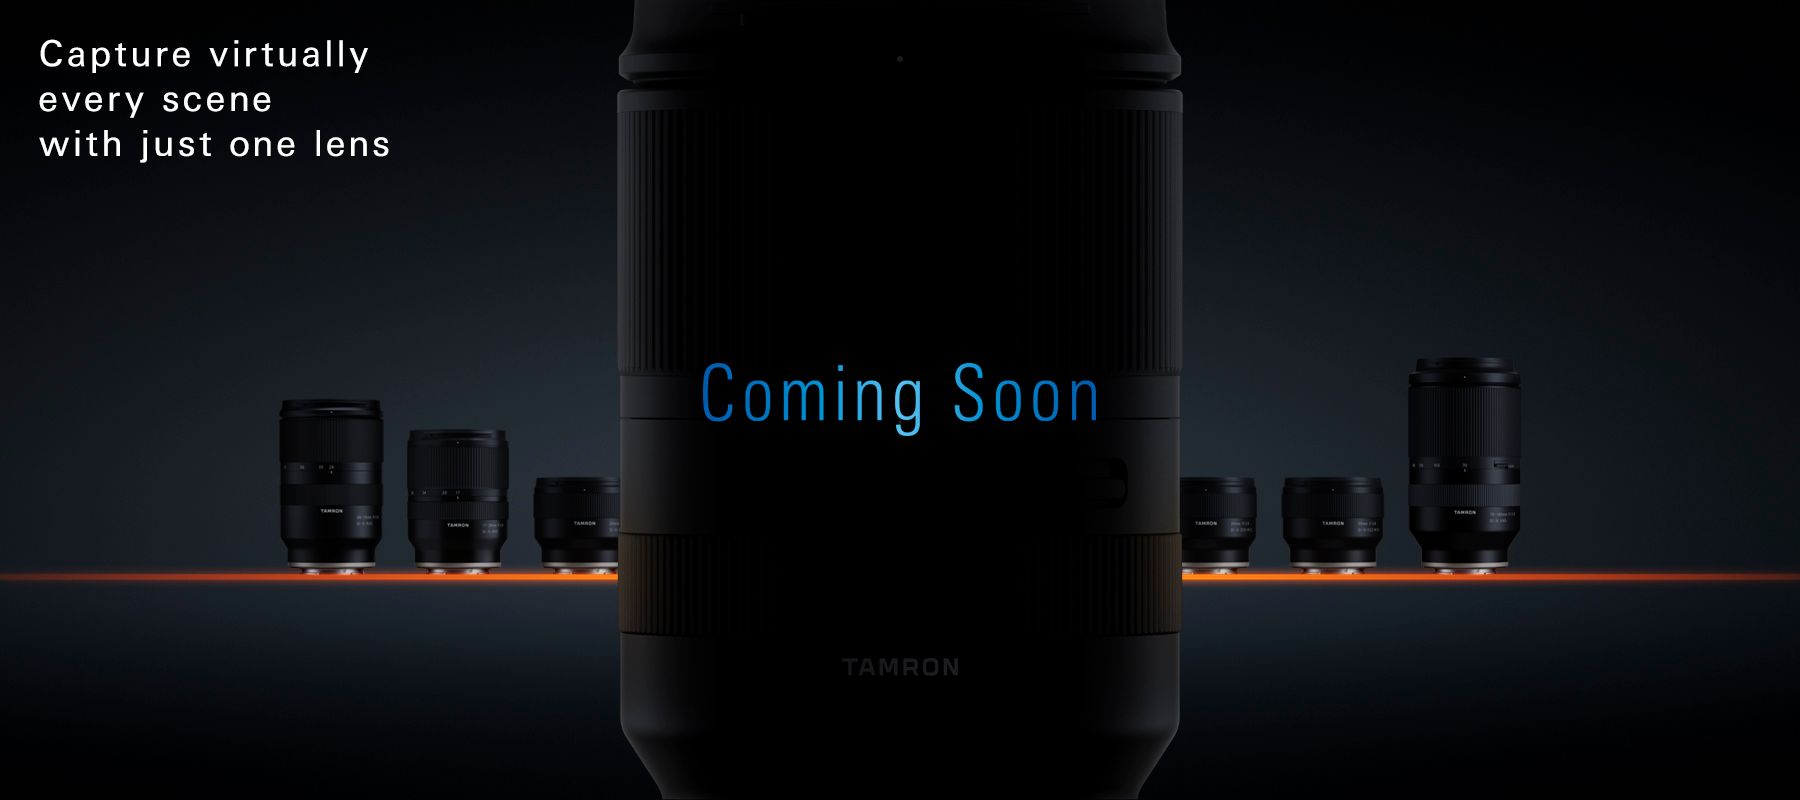 Hình ảnh đầu tiên của ống kính Tamron 28-200mm f/2.8-5.6 RXD sắp được ra mắt